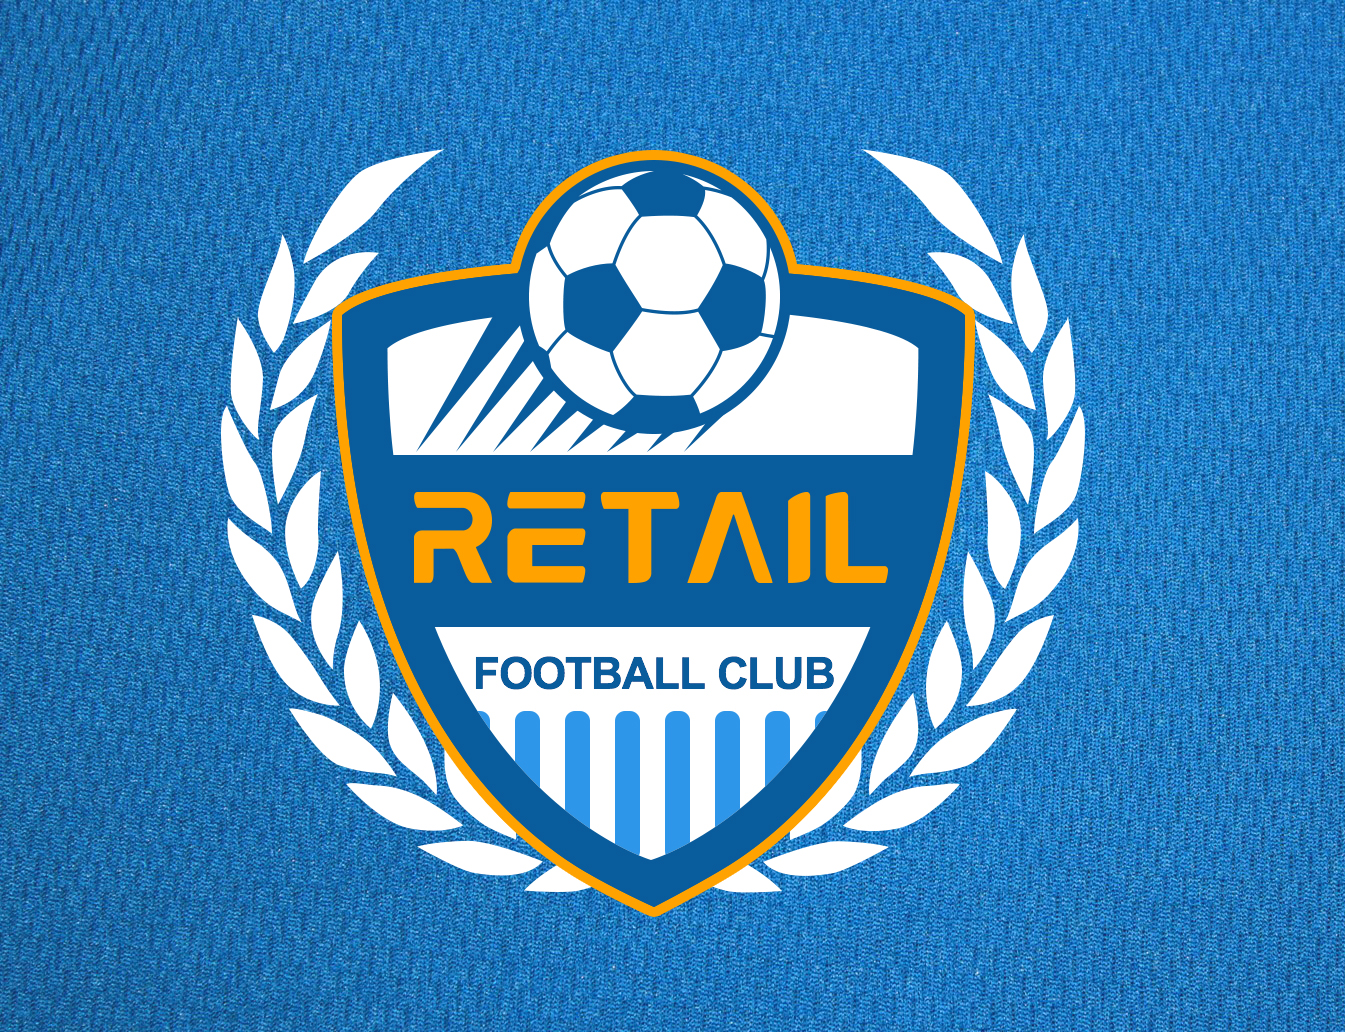 瑞泰尔公司的足球队队徽纯属娱乐不过也是我目前最满意的logo